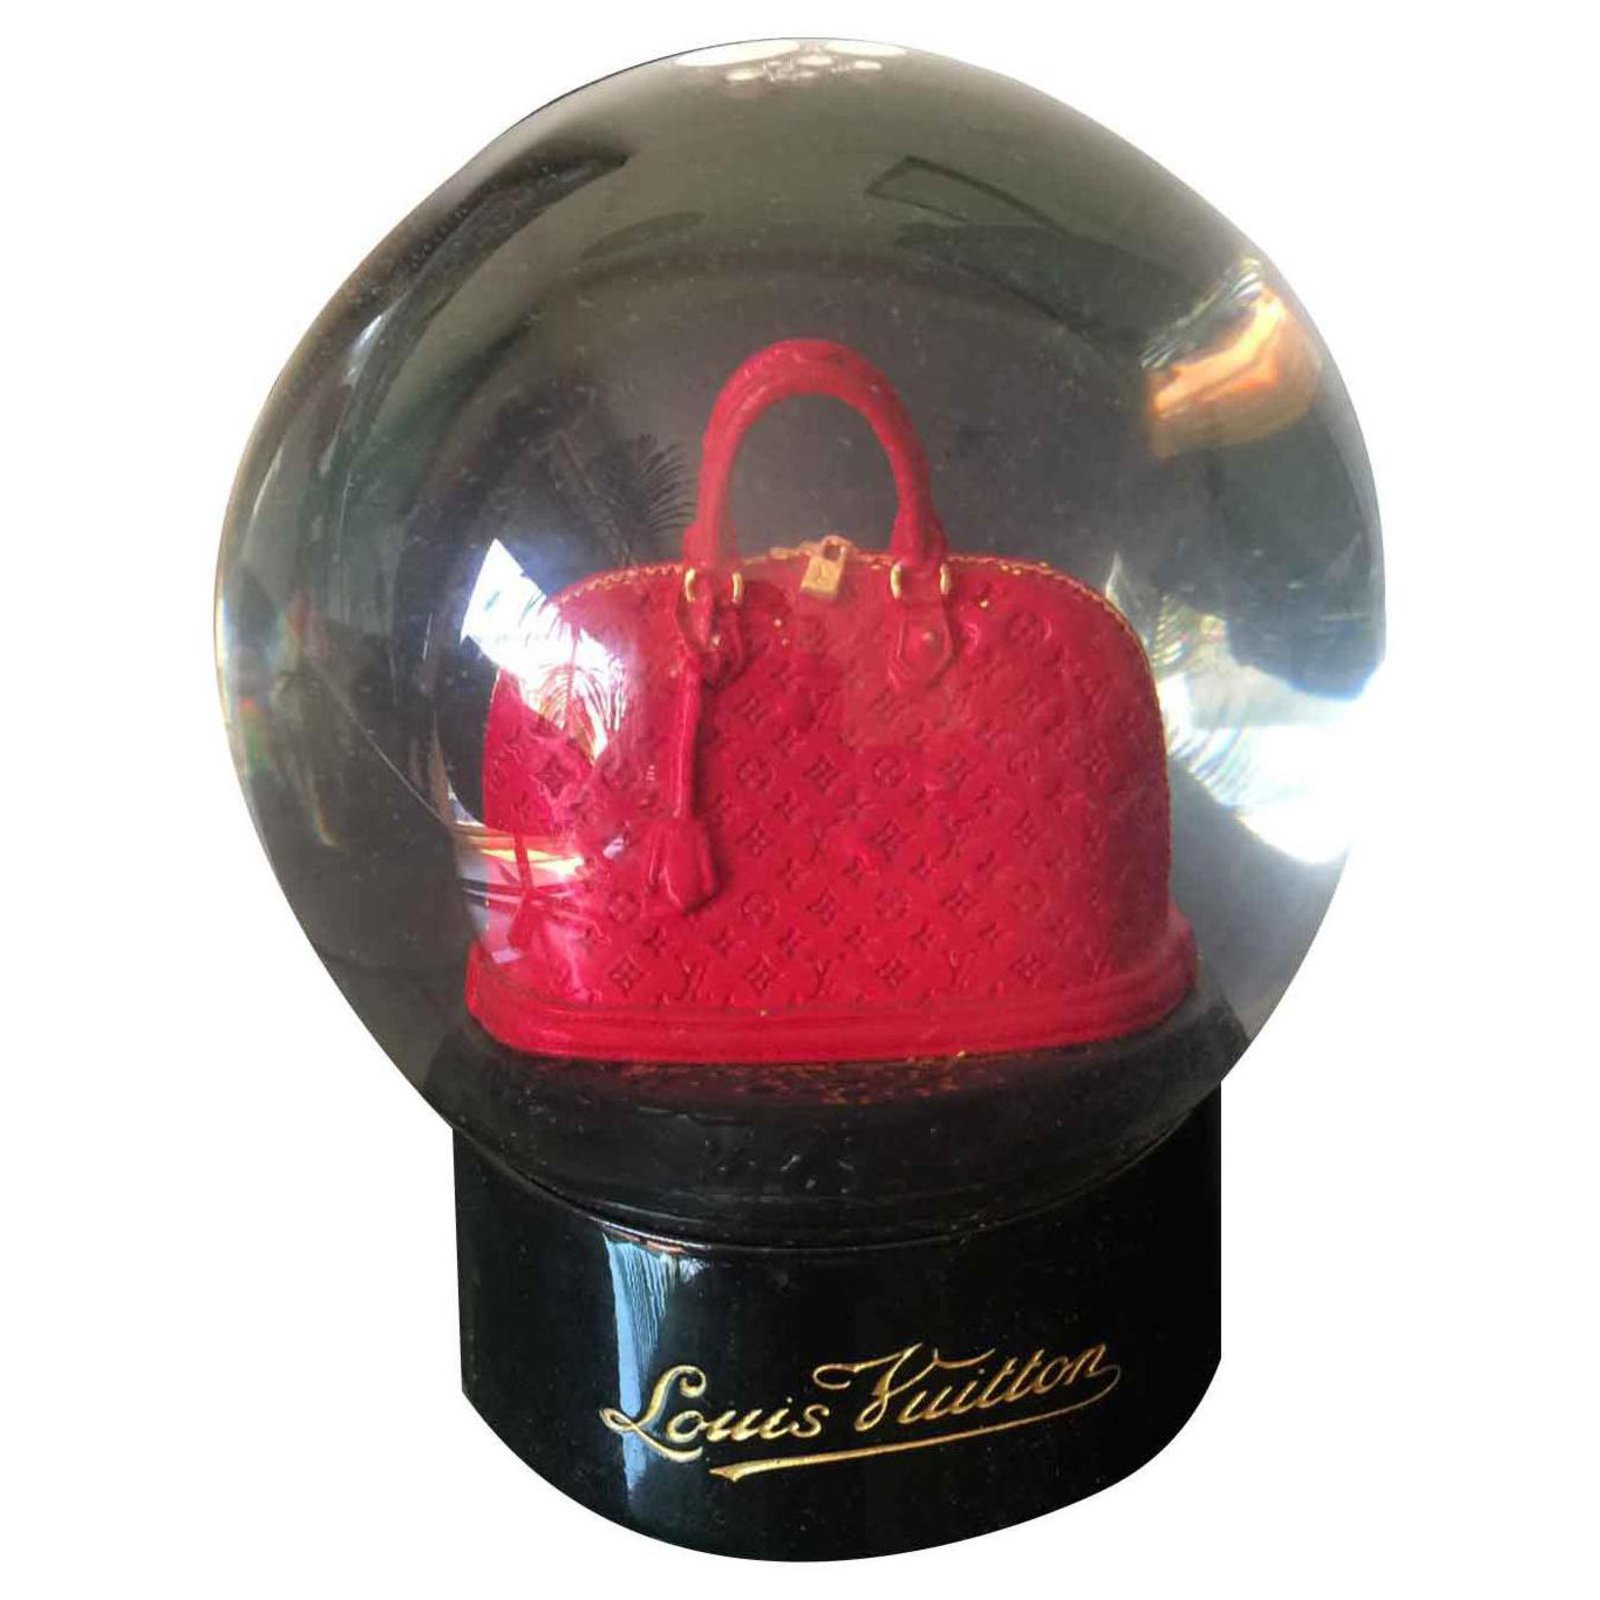 Louis Vuitton snow globe